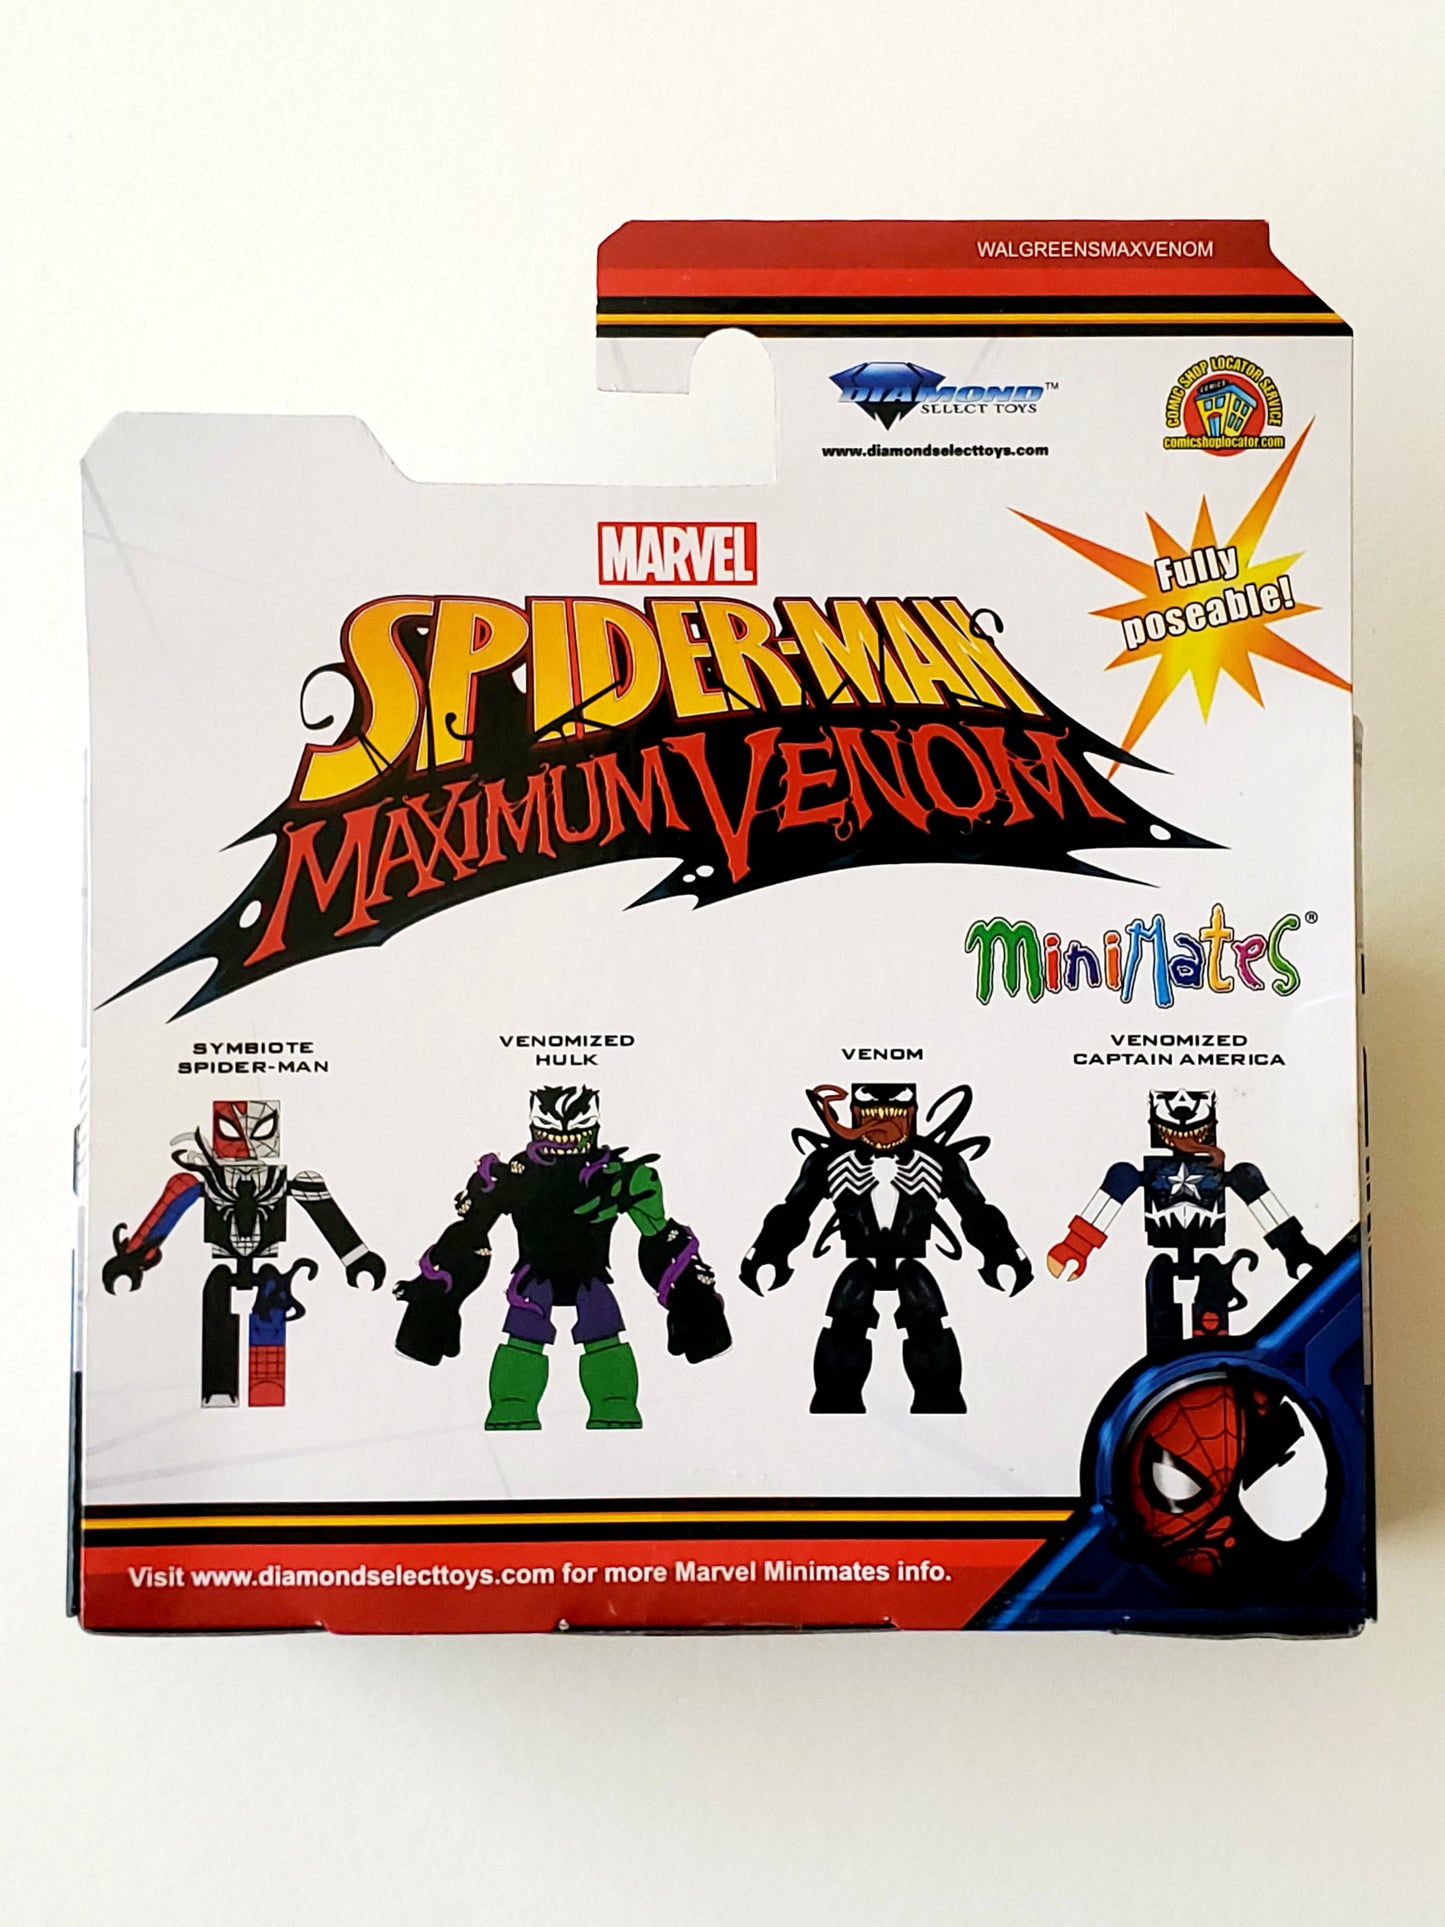 Spider-Man Maximum Venom Minimates Walgreens Exclusive Venom & Venomized Captain America